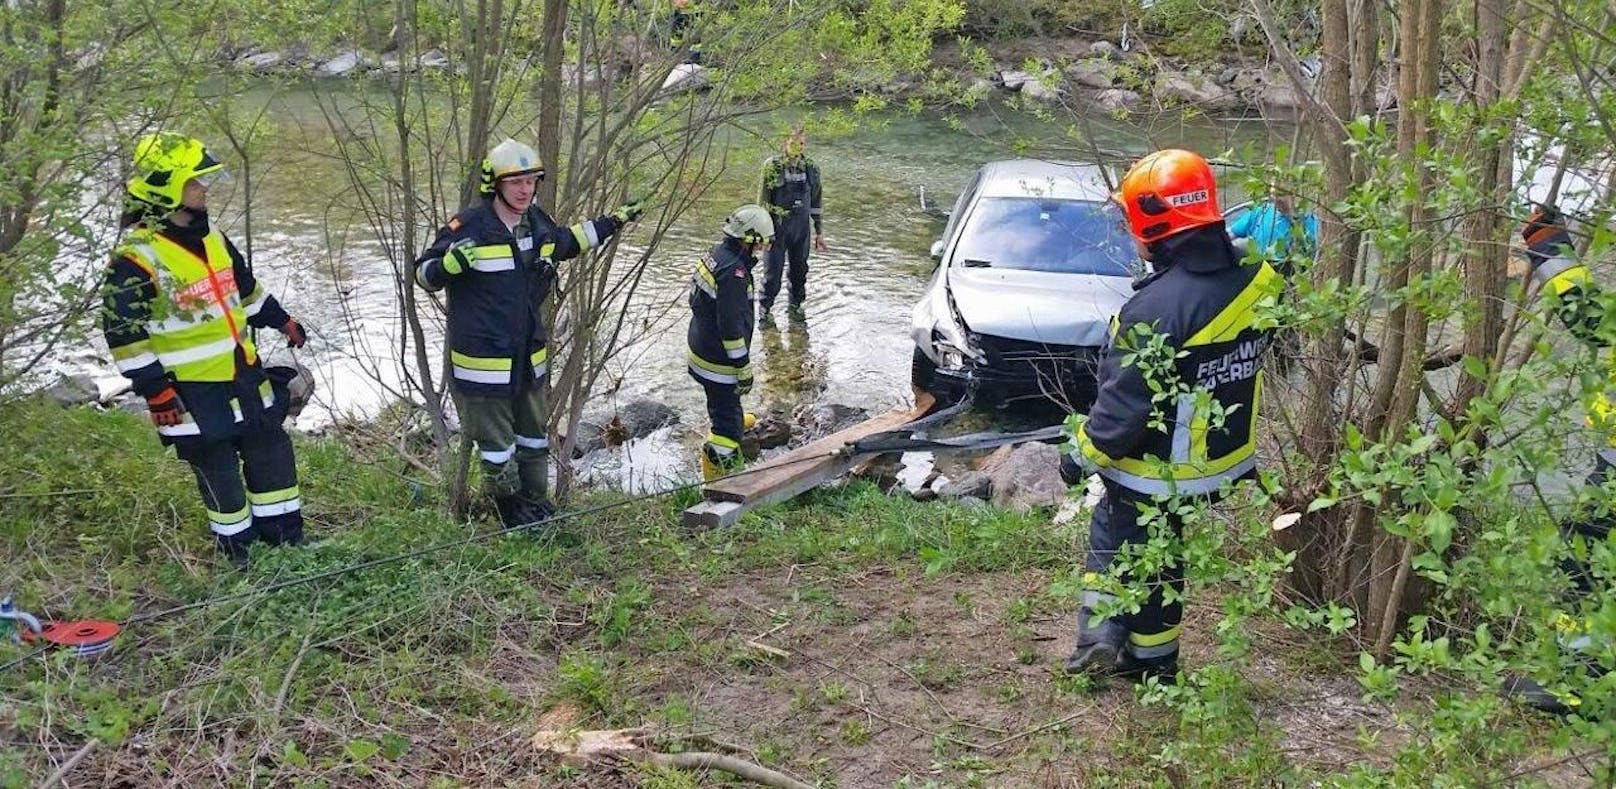 Auto stürzt in Fluss, Feuerwehr improvisiert